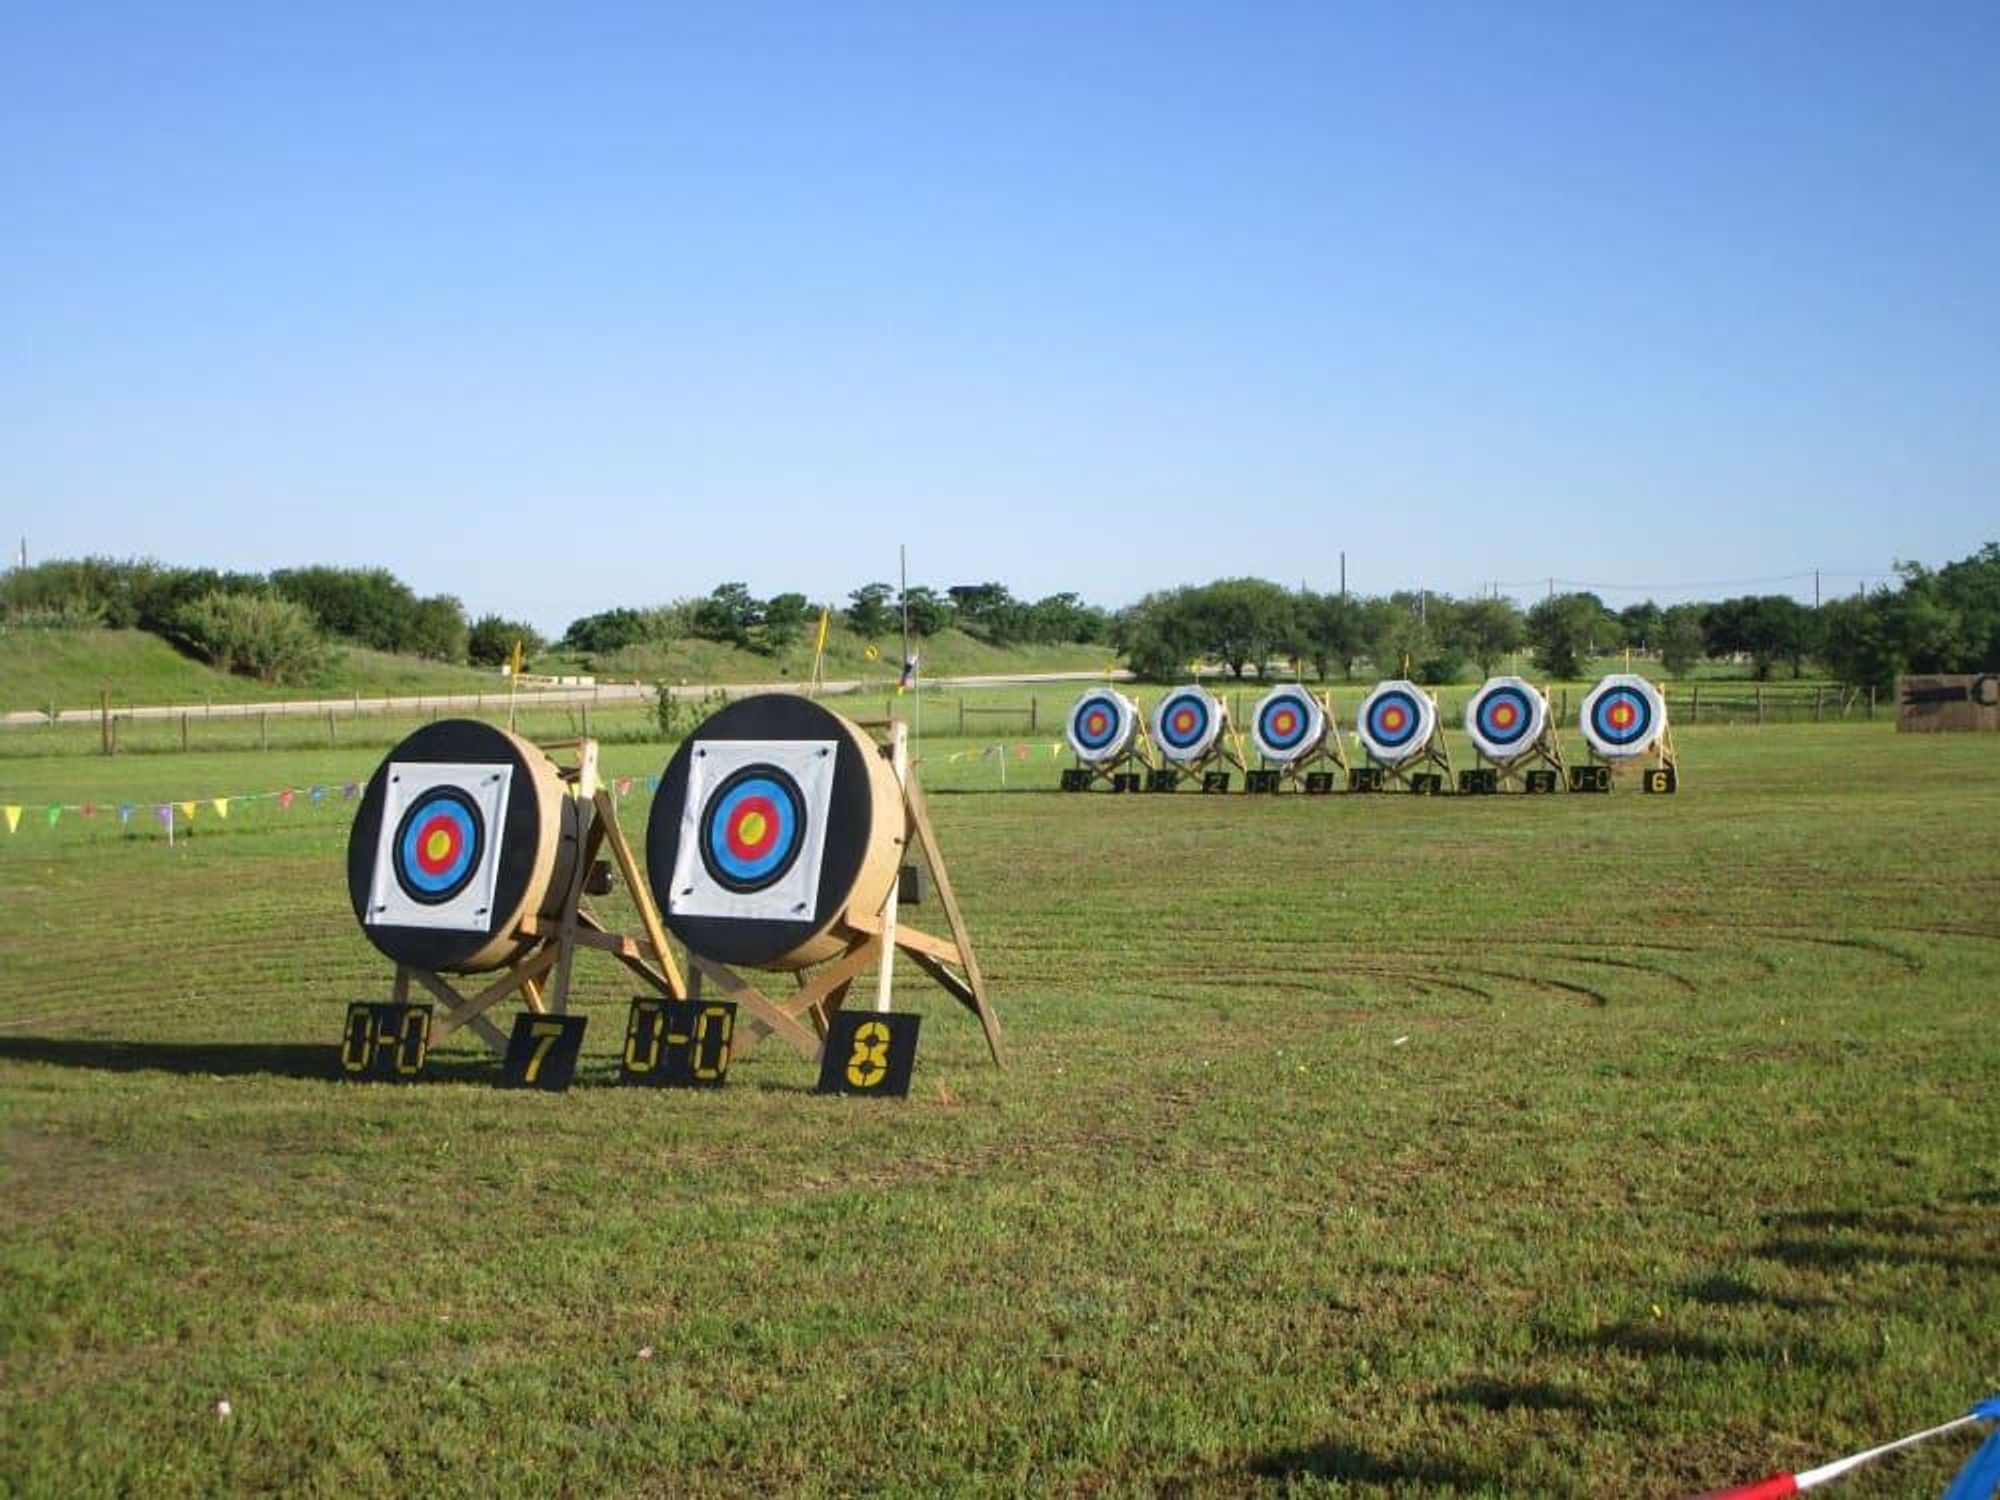 Central Texas Archery